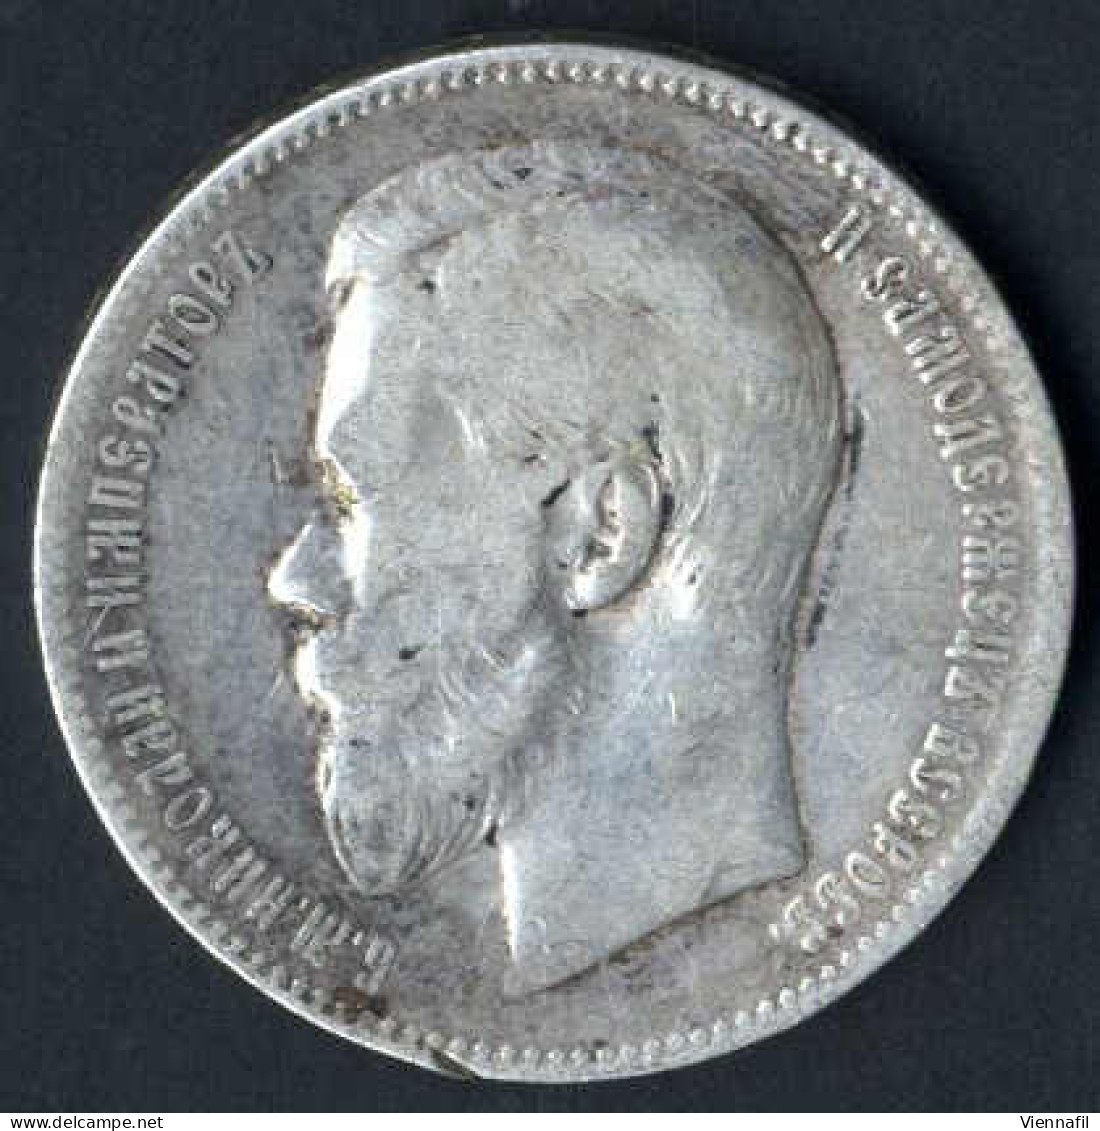 5, 10, 15, 20, 50 Kopeken und 1 Rubel 1899/1913, Lot mit sieben Münzen, davon sechs Silbermünzen, schön bis vorzüglich-,